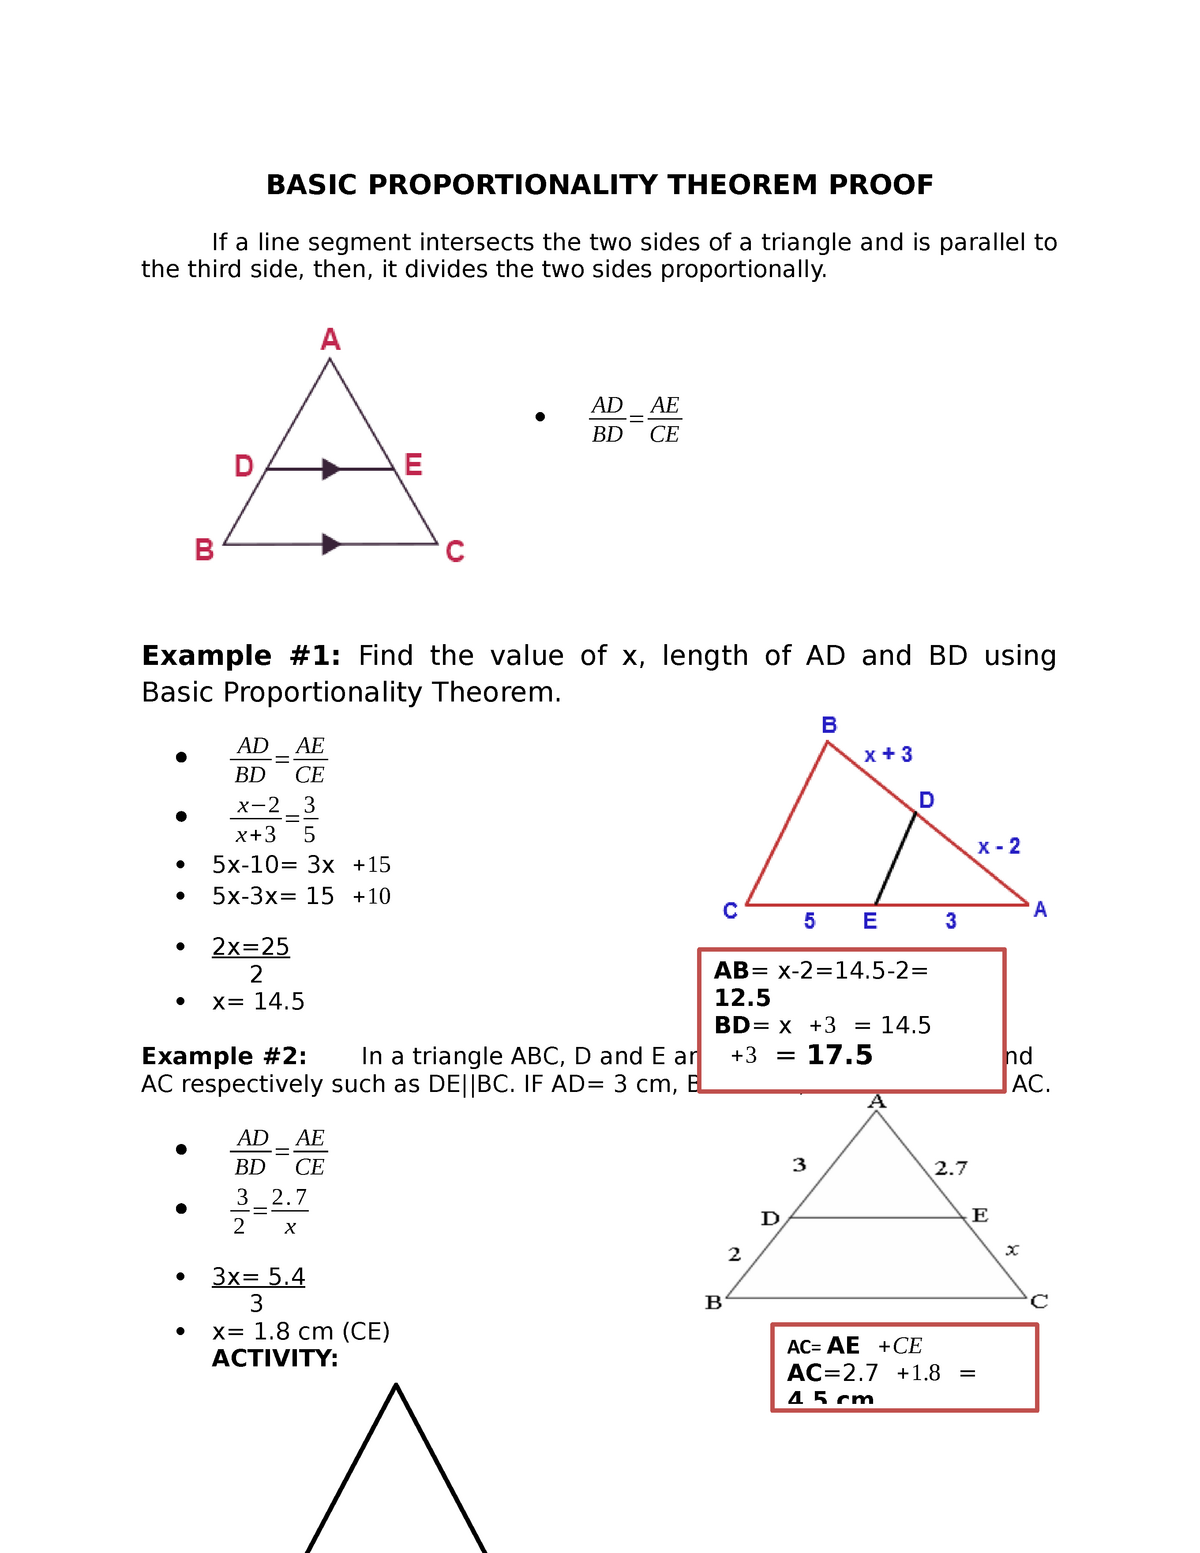 basic-proportionality-theorem-proof-basic-proportionality-theorem